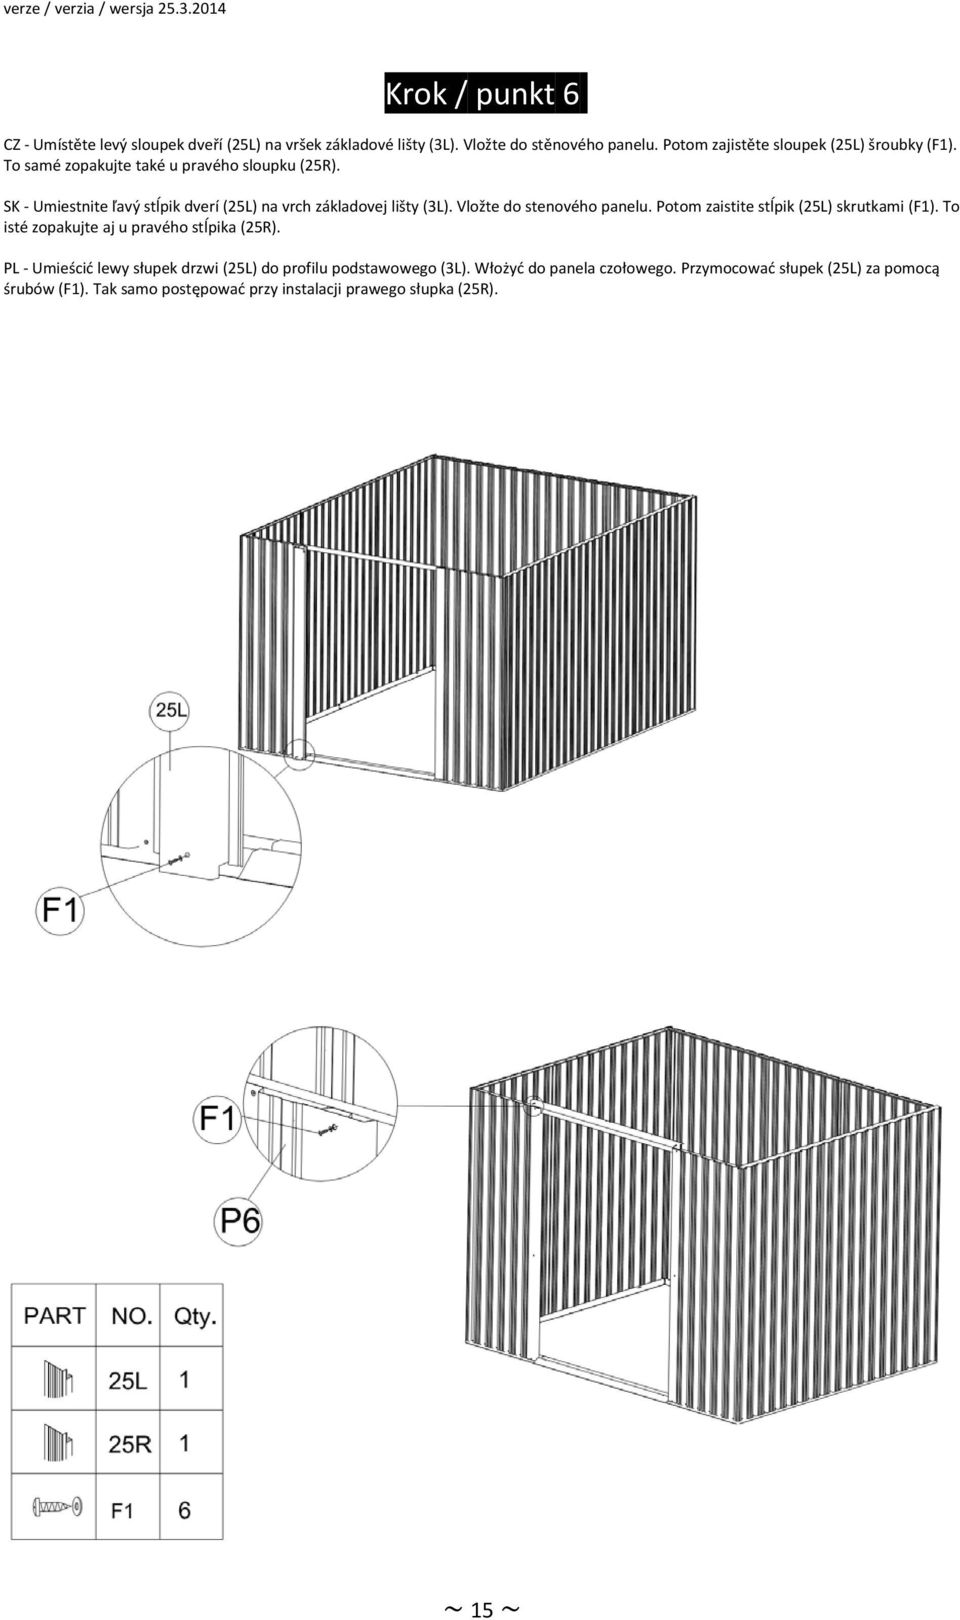 SK Umiestnite ľavý stĺpik dverí (25L) na vrch základovej lišty (3L). Vložte do stenového panelu. Potom zaistite stĺpik (25L) skrutkami (F1).